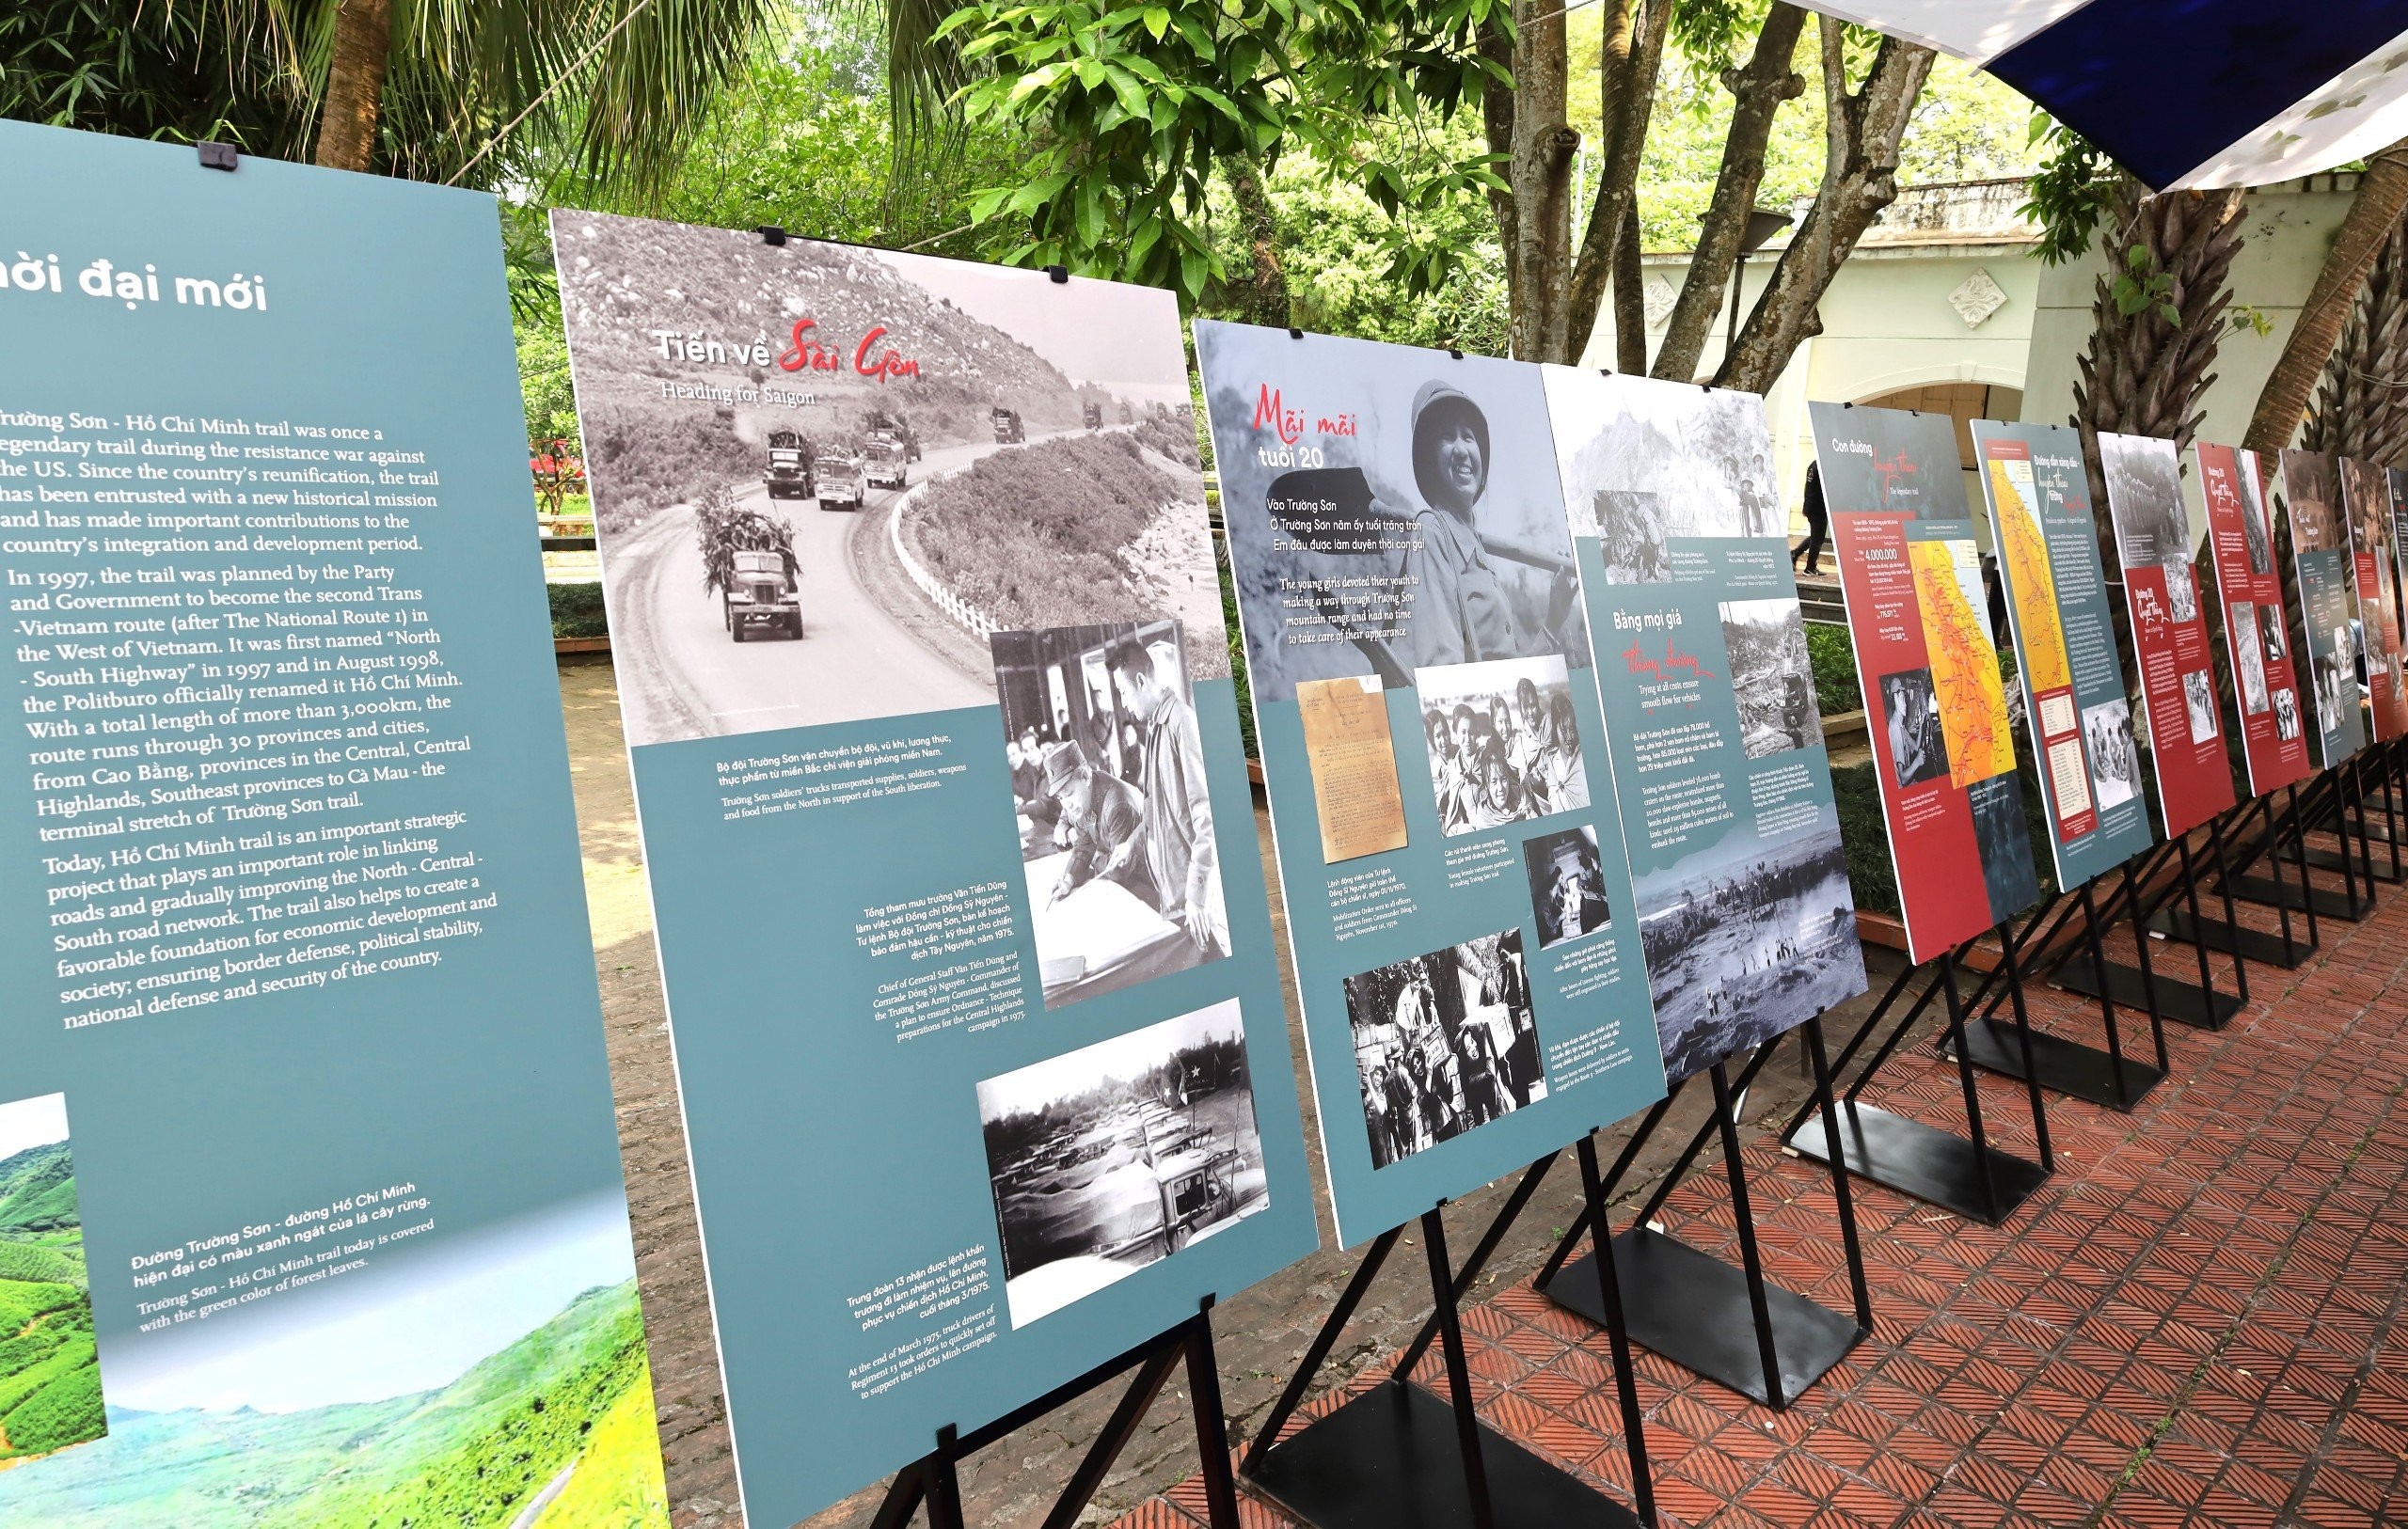 Hơn 100 tài liệu, hình ảnh về sự ra đời của “Tuyến lửa” đường Trường Sơn huyền thoại